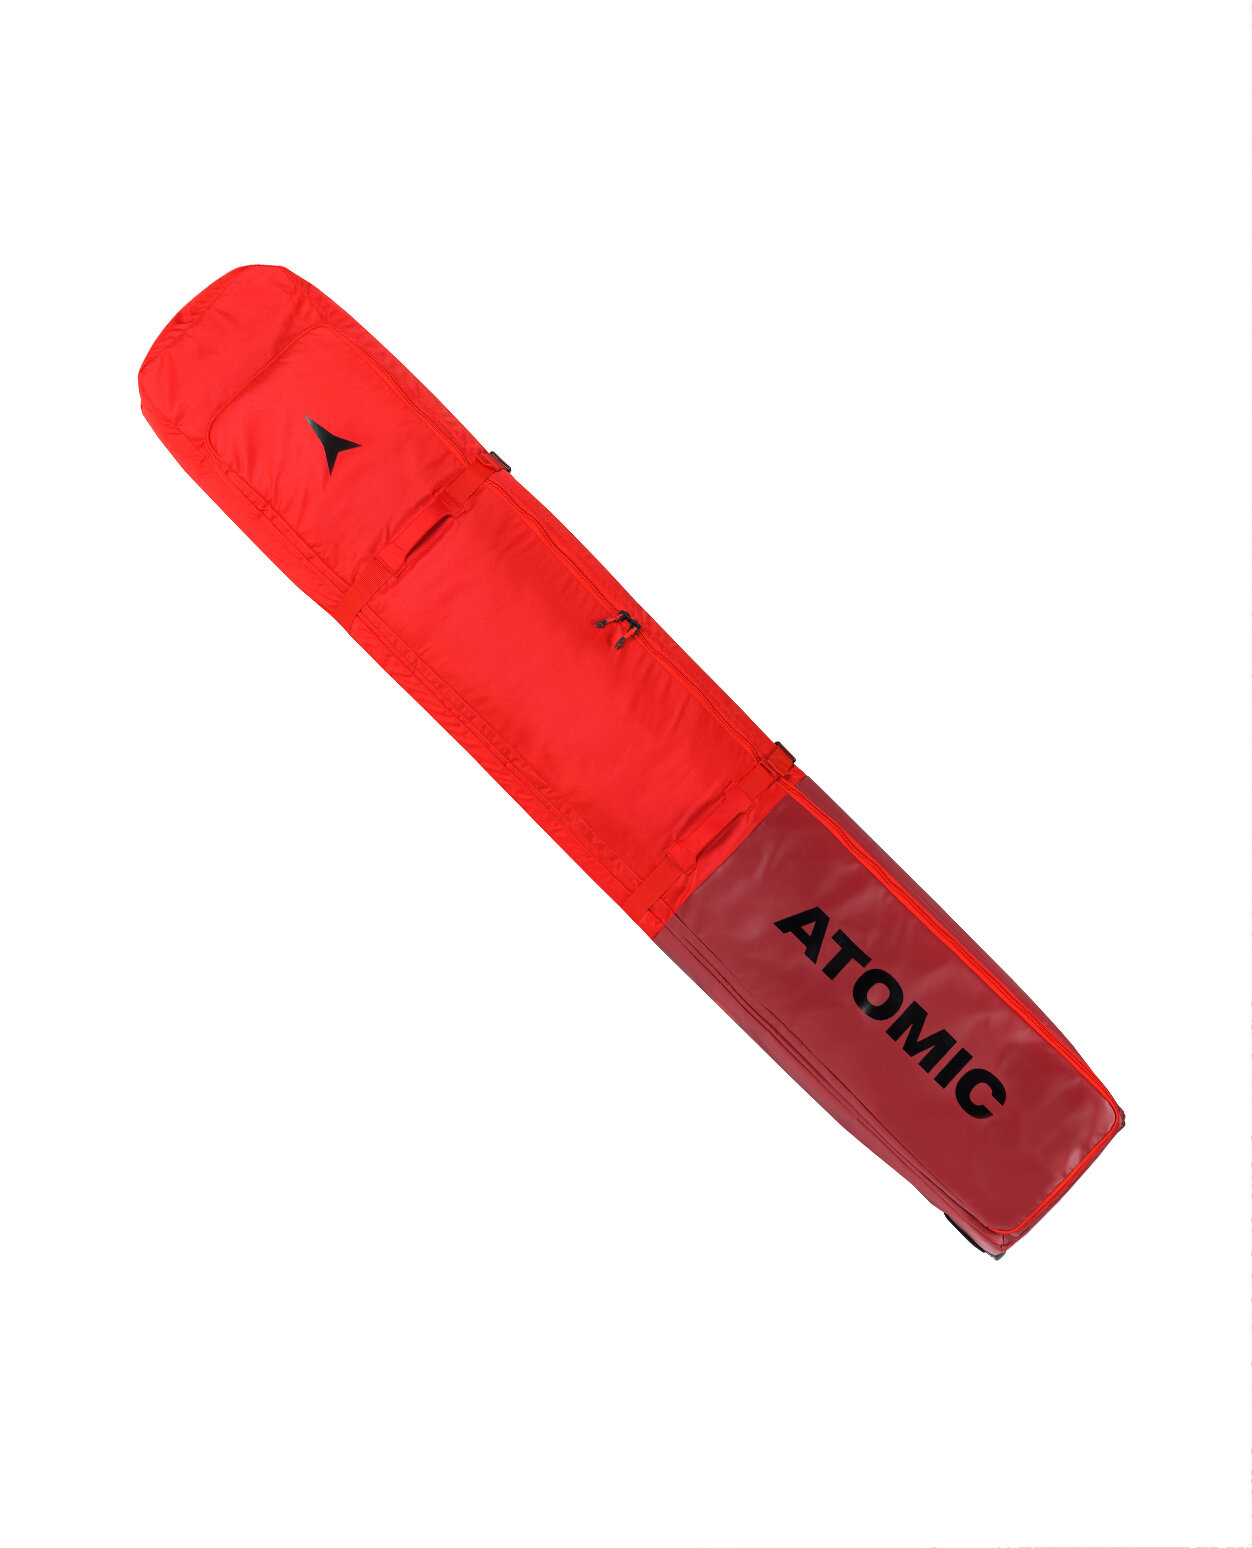 Atomic RS Ski Wheelie 4 Pairs Red